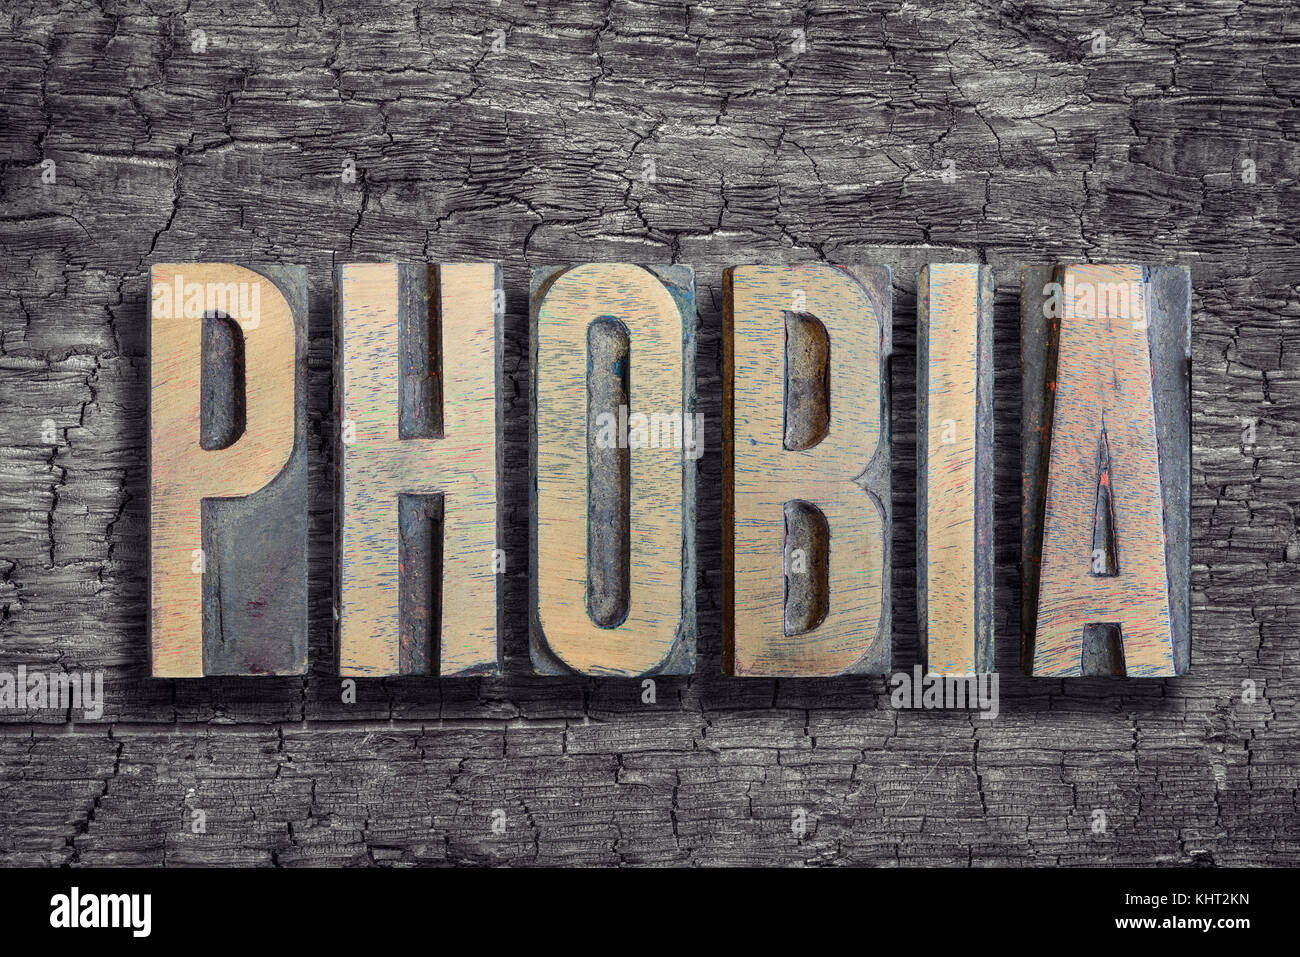 Phobie Wort von Vintage buchdruck Typ auf verbranntem Holz Hintergrund Stockfoto